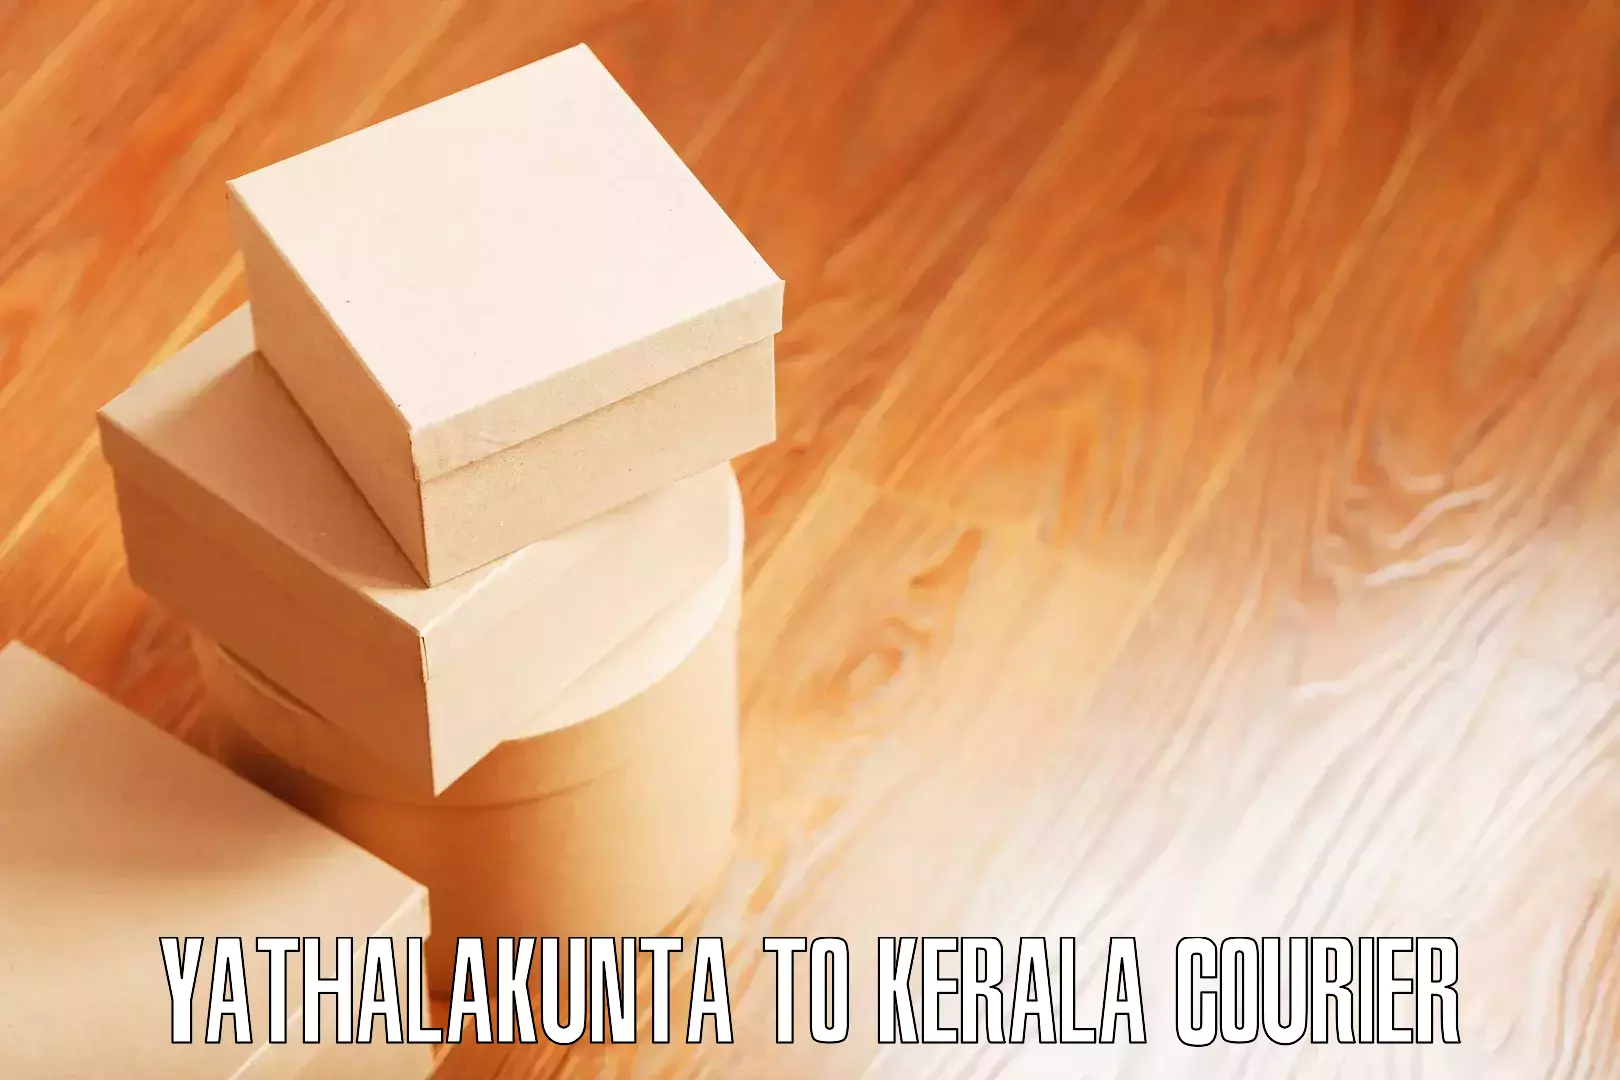 Furniture moving experts Yathalakunta to IIIT Kottayam